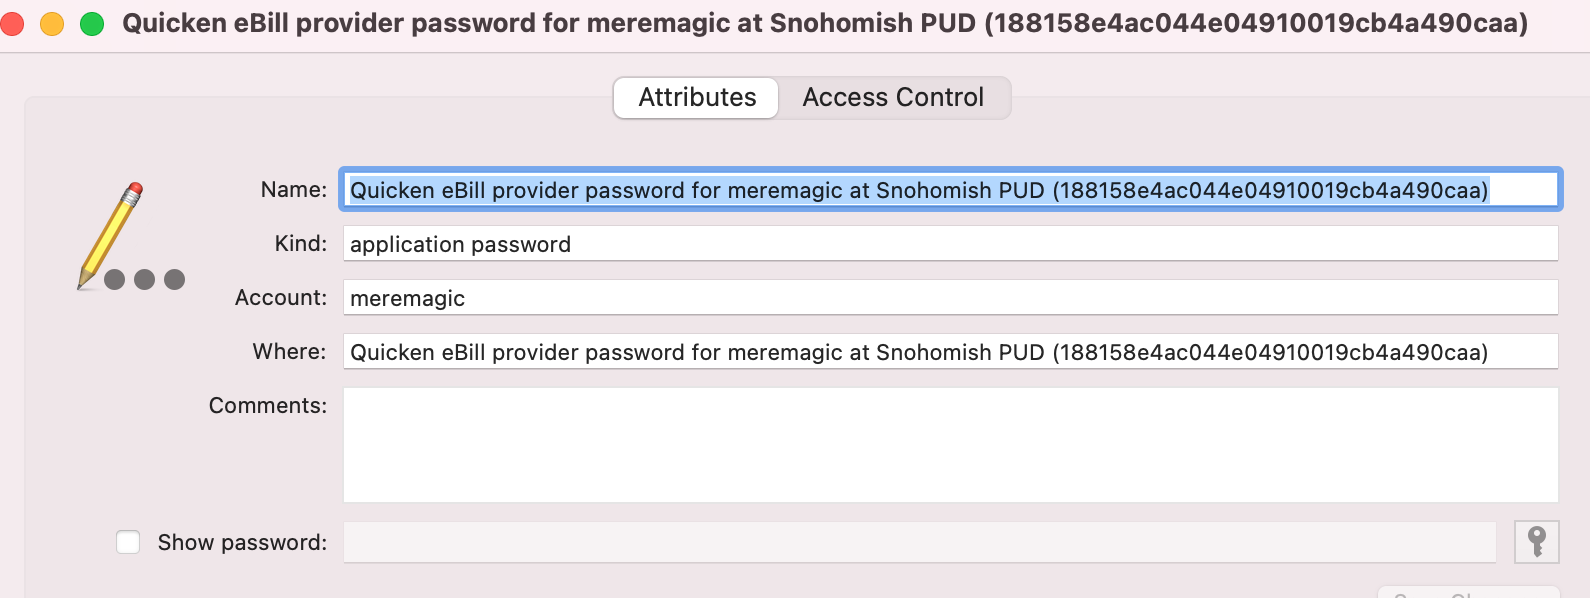 schwab password issue in quicken for mac